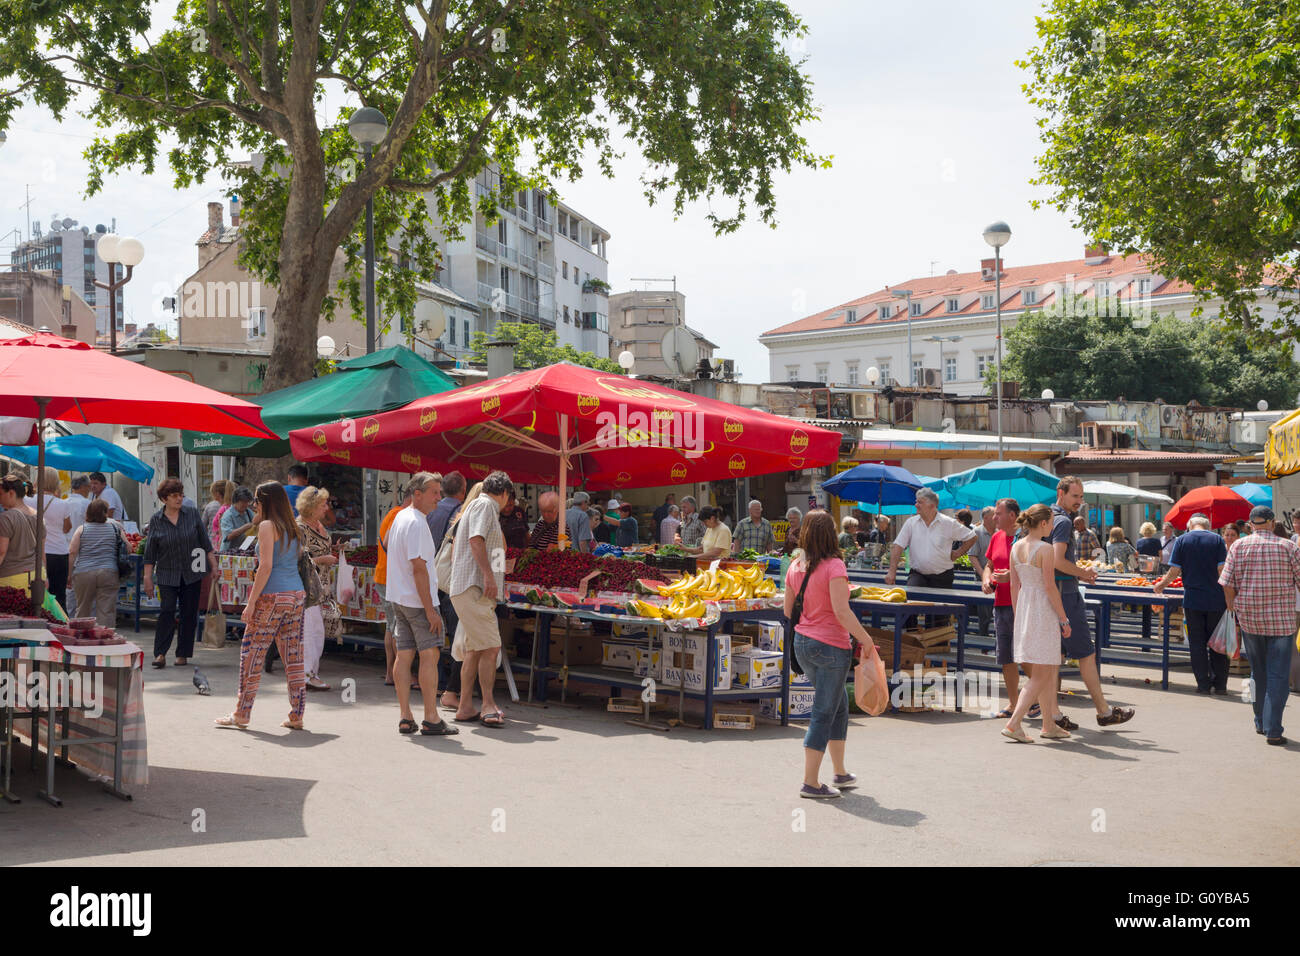 Split, Dalmatien, Kroatien.  Der Pazar oder Marktplatz.  Auch bekannt als der "grüne Markt". Stockfoto